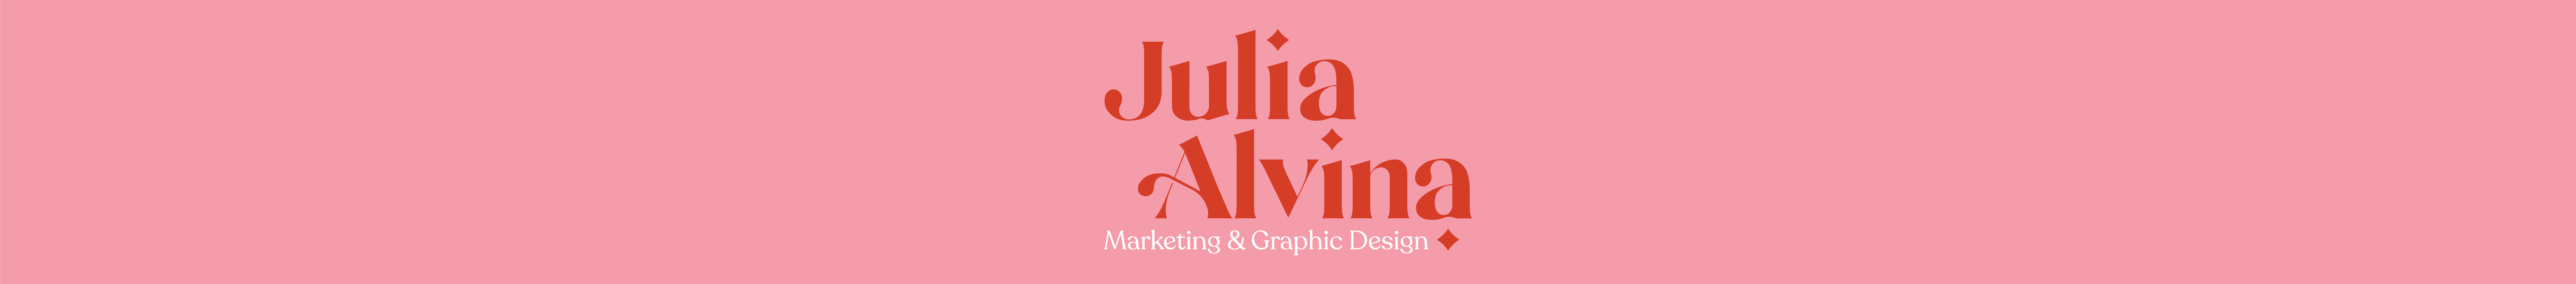 Julia Alvina's profile banner